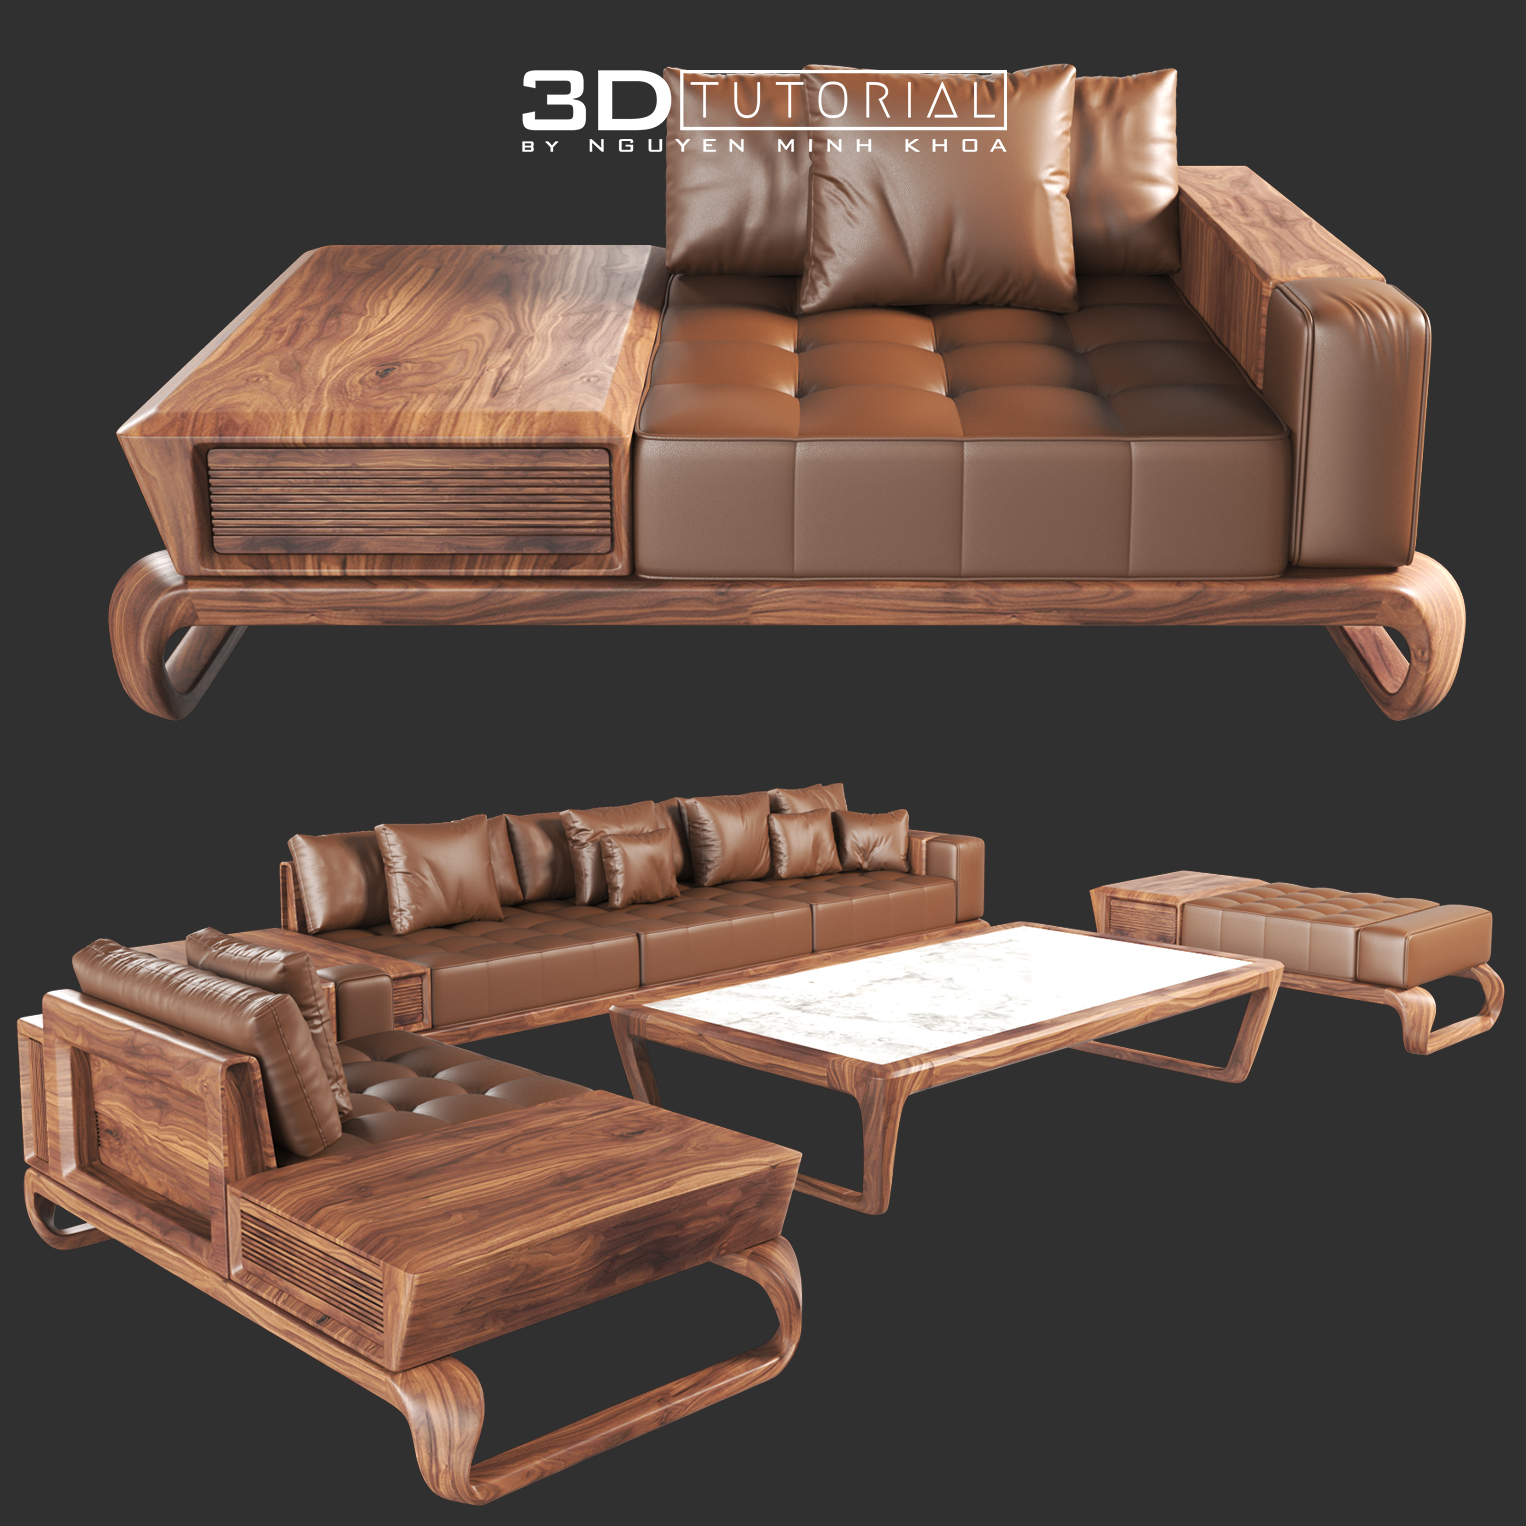 Với 3dtutorial sofa gỗ, bạn sẽ có cơ hội học các kỹ thuật thiết kế nội thất và sáng tạo những chiếc sofa đẹp và độc đáo. Những bài học về 3dtutorial sofa gỗ sẽ giúp bạn nâng cao kỹ năng và độ thành thạo trong việc sử dụng các công cụ thiết kế 3D hiện đại nhất. Hãy xem hình ảnh được liên kết với từ khóa này để tìm hiểu thêm.